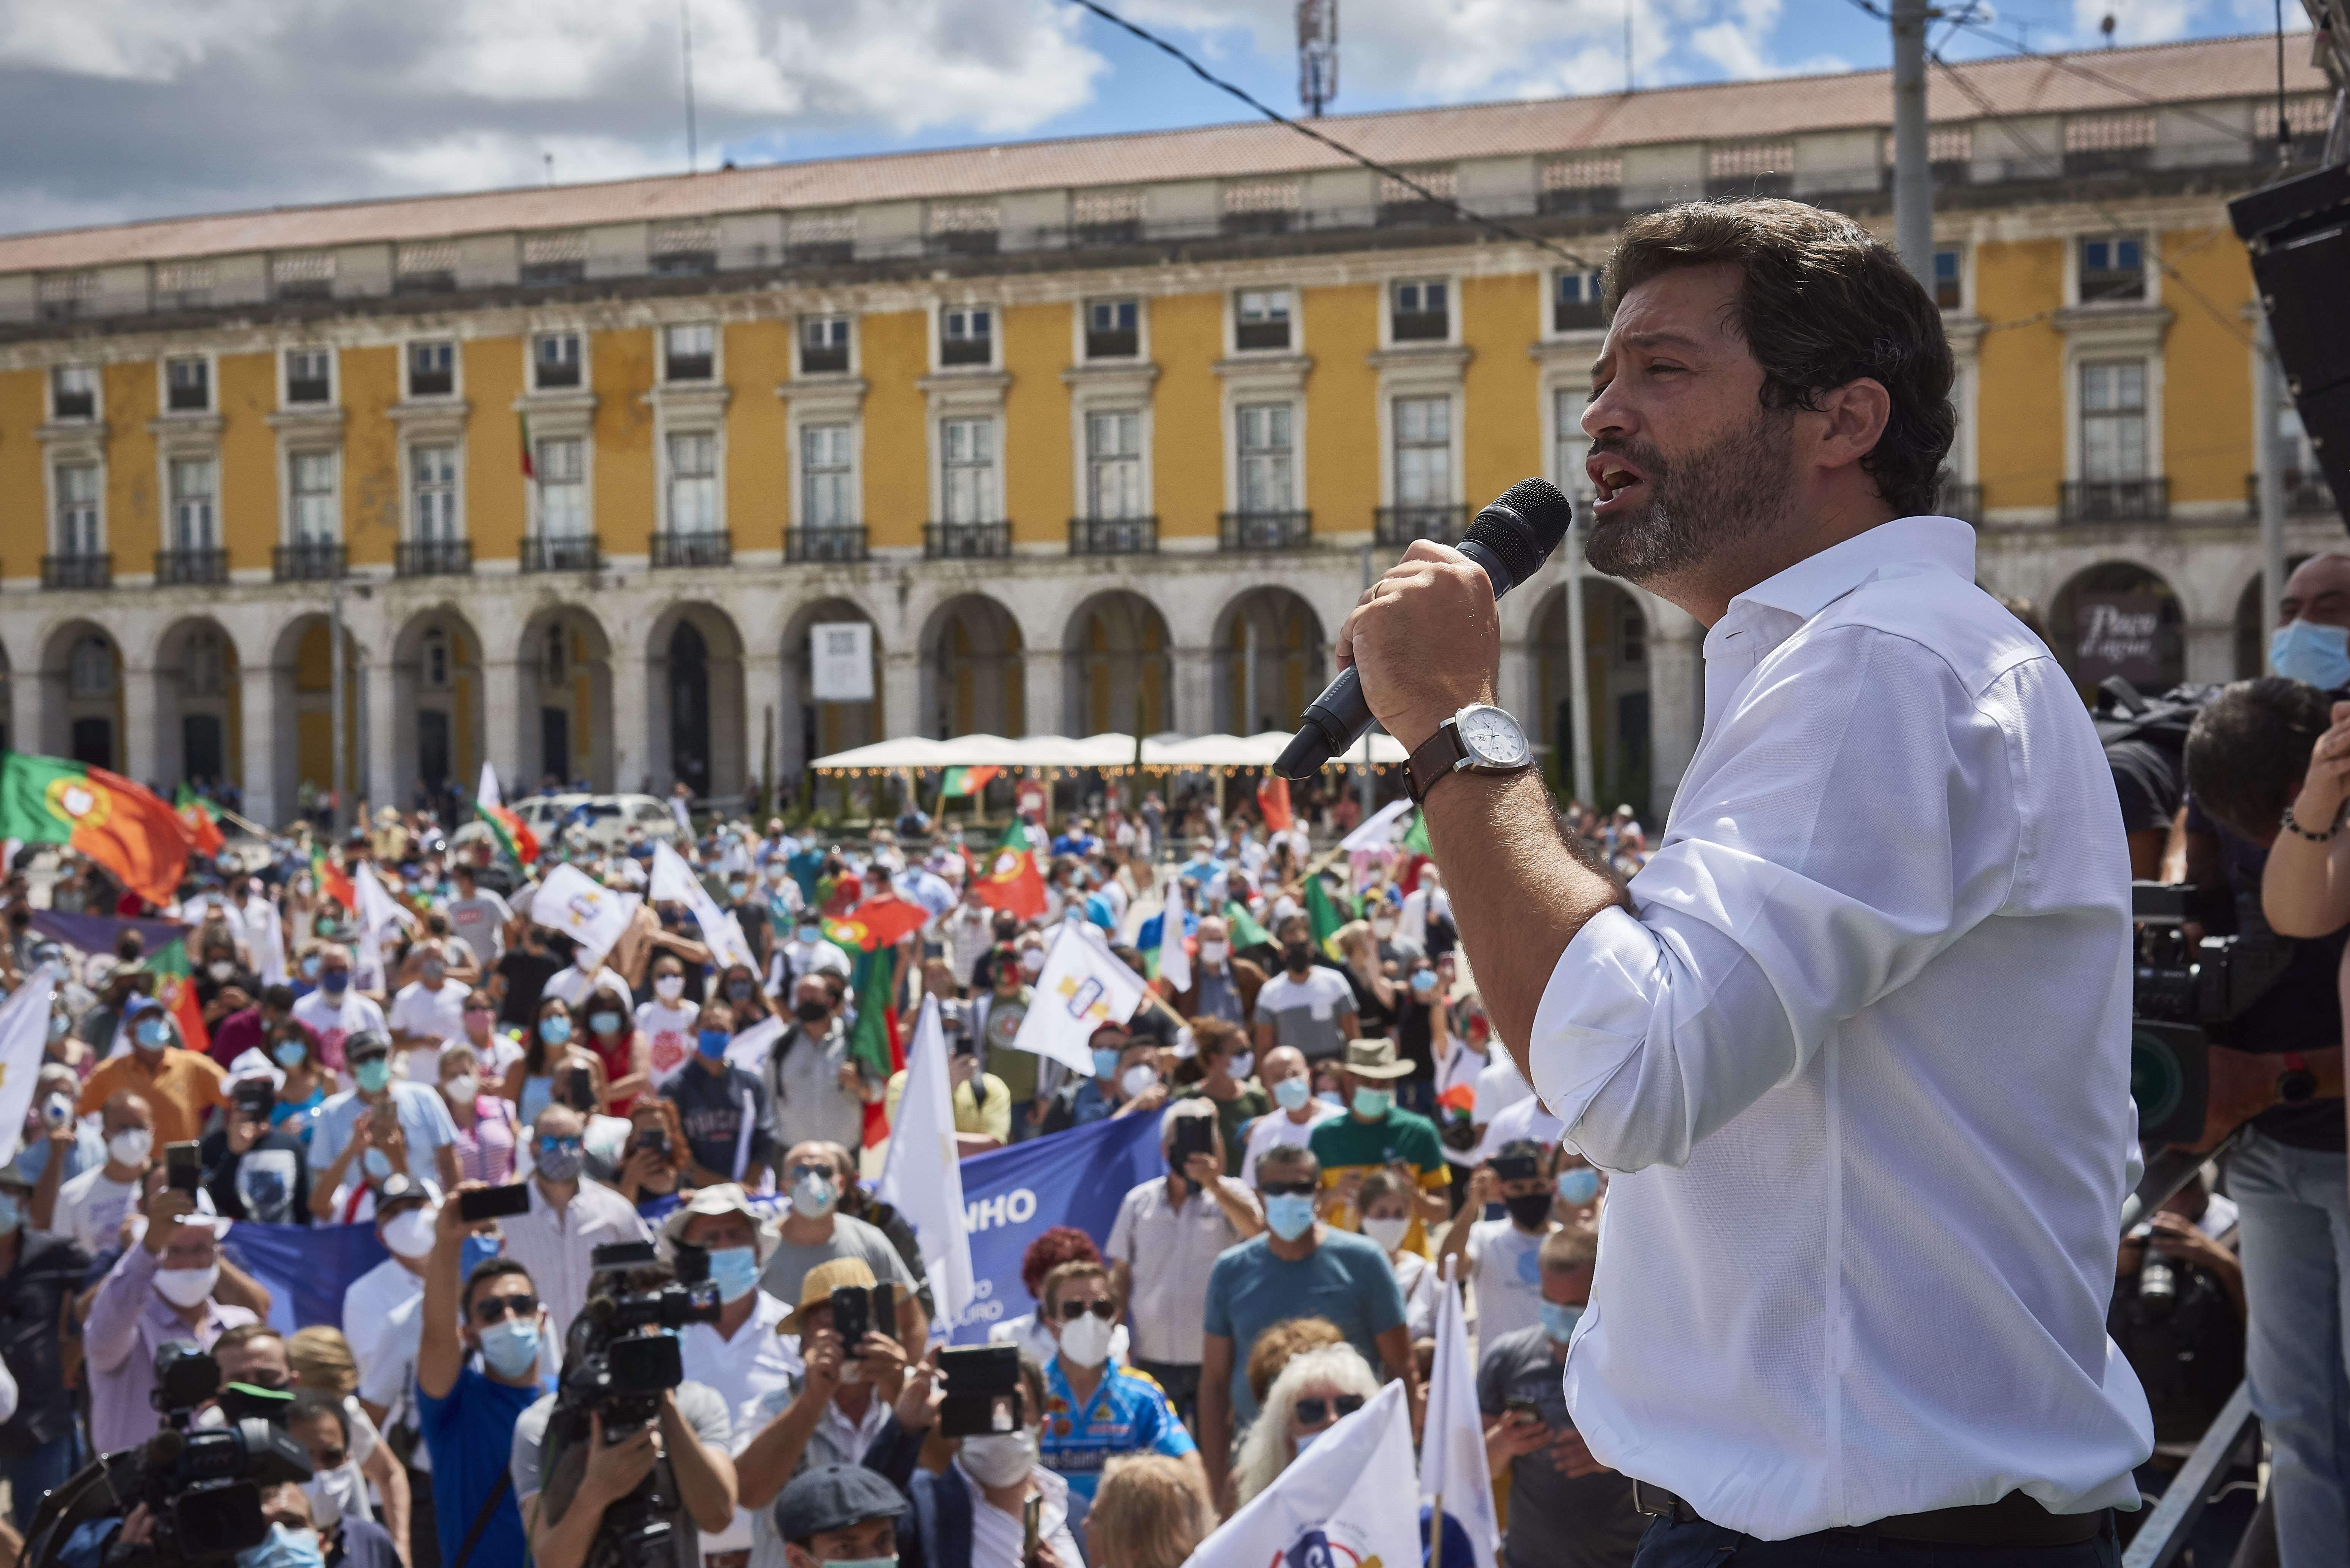 Chega, el partido de extrema derecha que se hace fuerte en la carrera electoral en Portugal